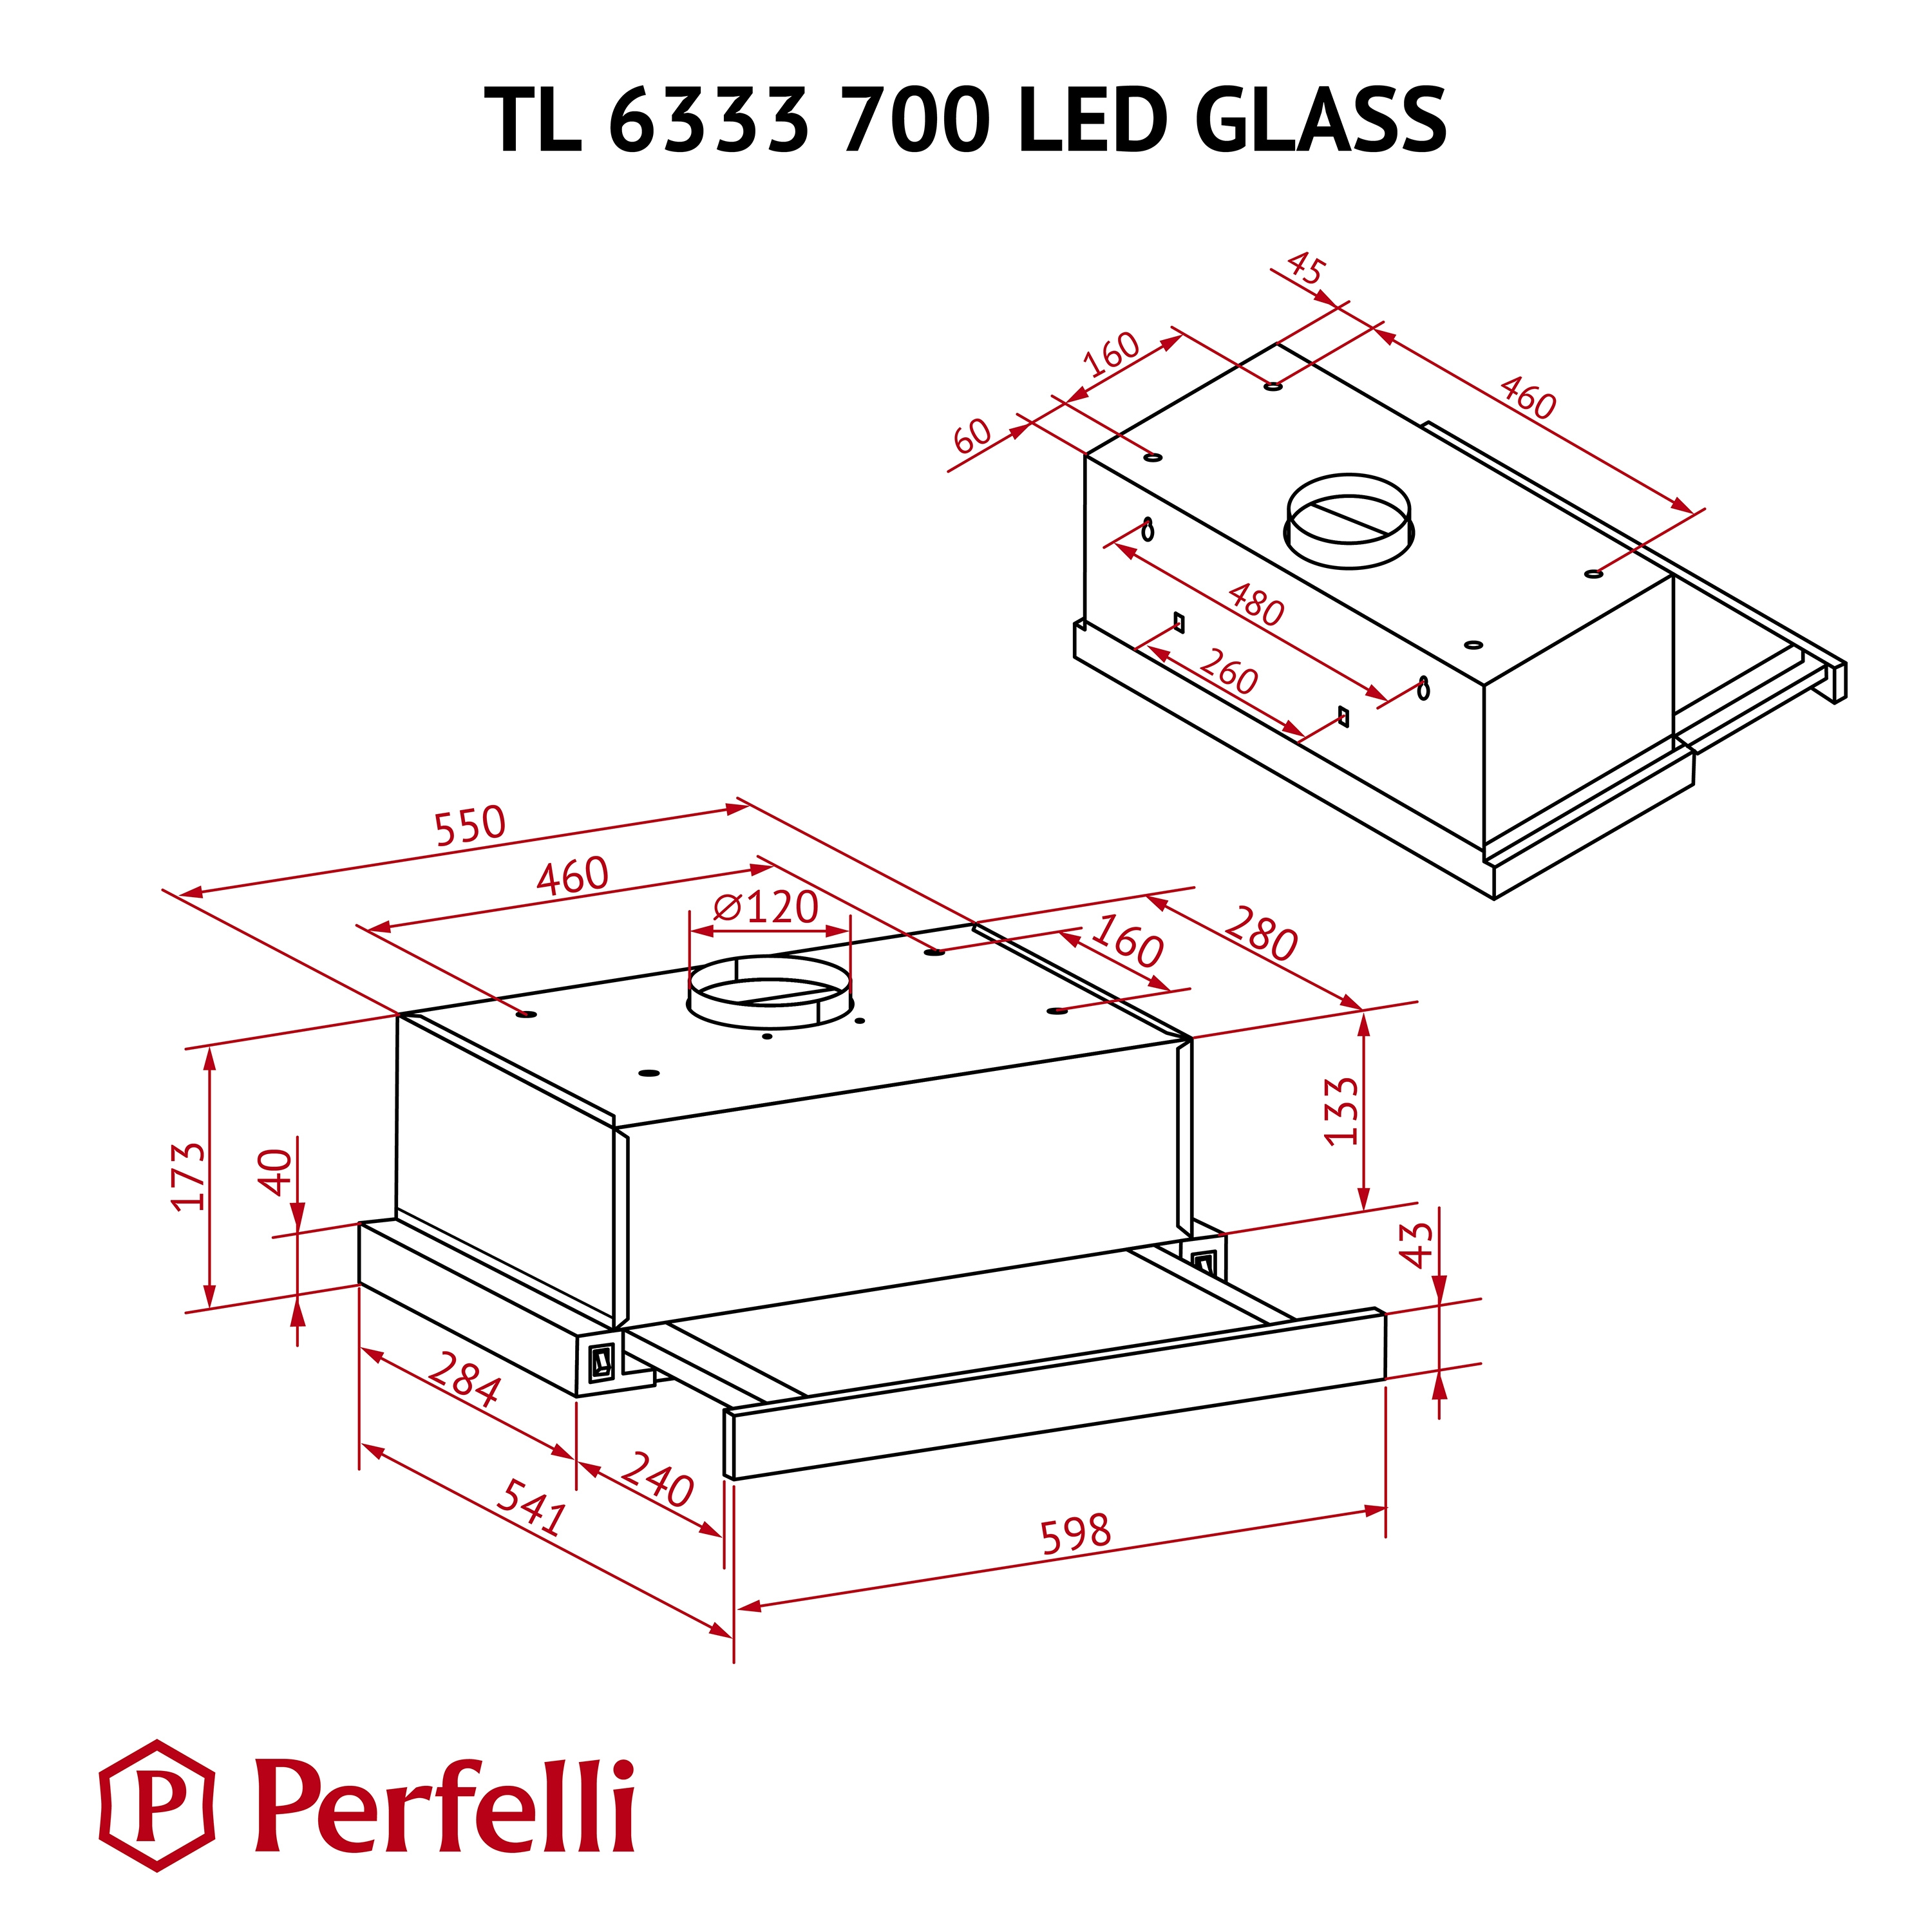 Perfelli TL 6333 WH 700 LED GLASS Габаритные размеры